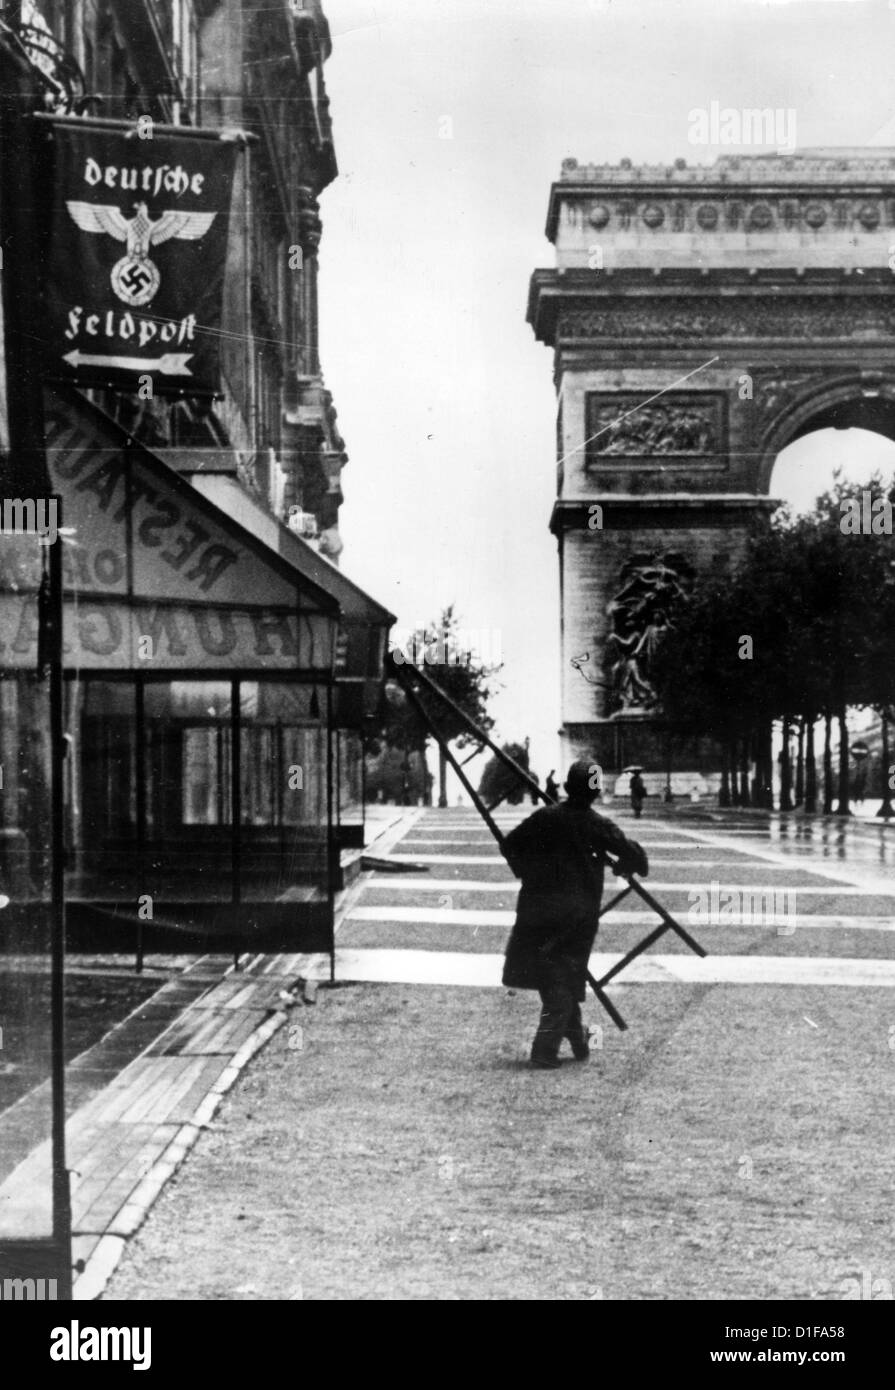 Un drapeau avec une croix gammée et un aigle fédéral allemand marque l'entrée du bureau de poste de l'armée allemande près de l'Arc de Triomphe à Paris, en France, en juillet 1940. Fotoarchiv für Zeitgeschichte Banque D'Images